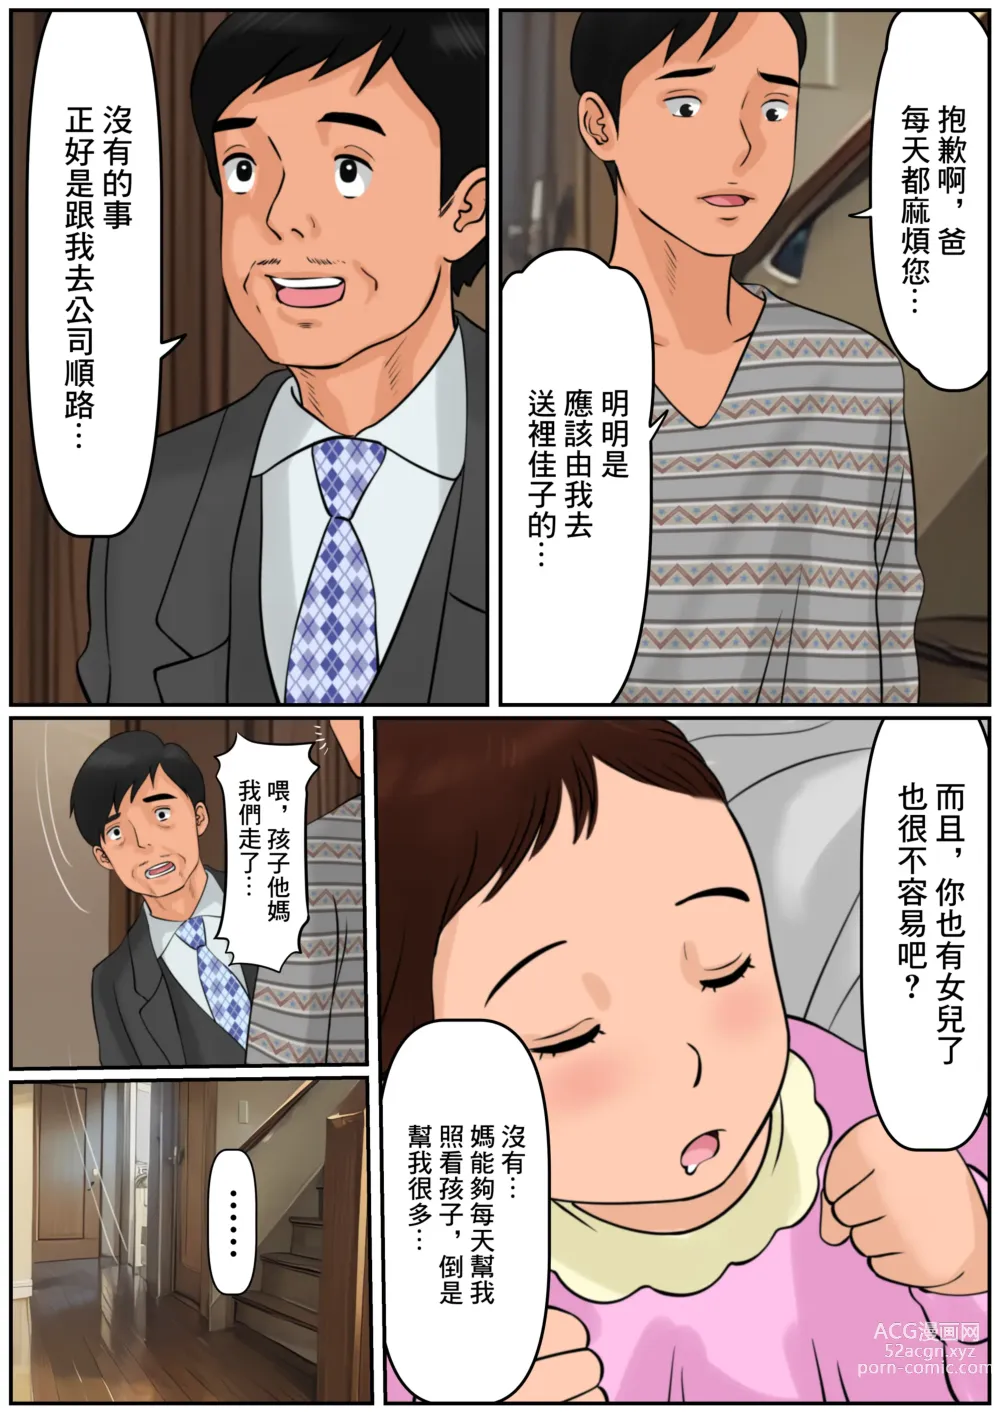 Page 37 of doujinshi 難道你是嫌棄我這個媽媽嗎?